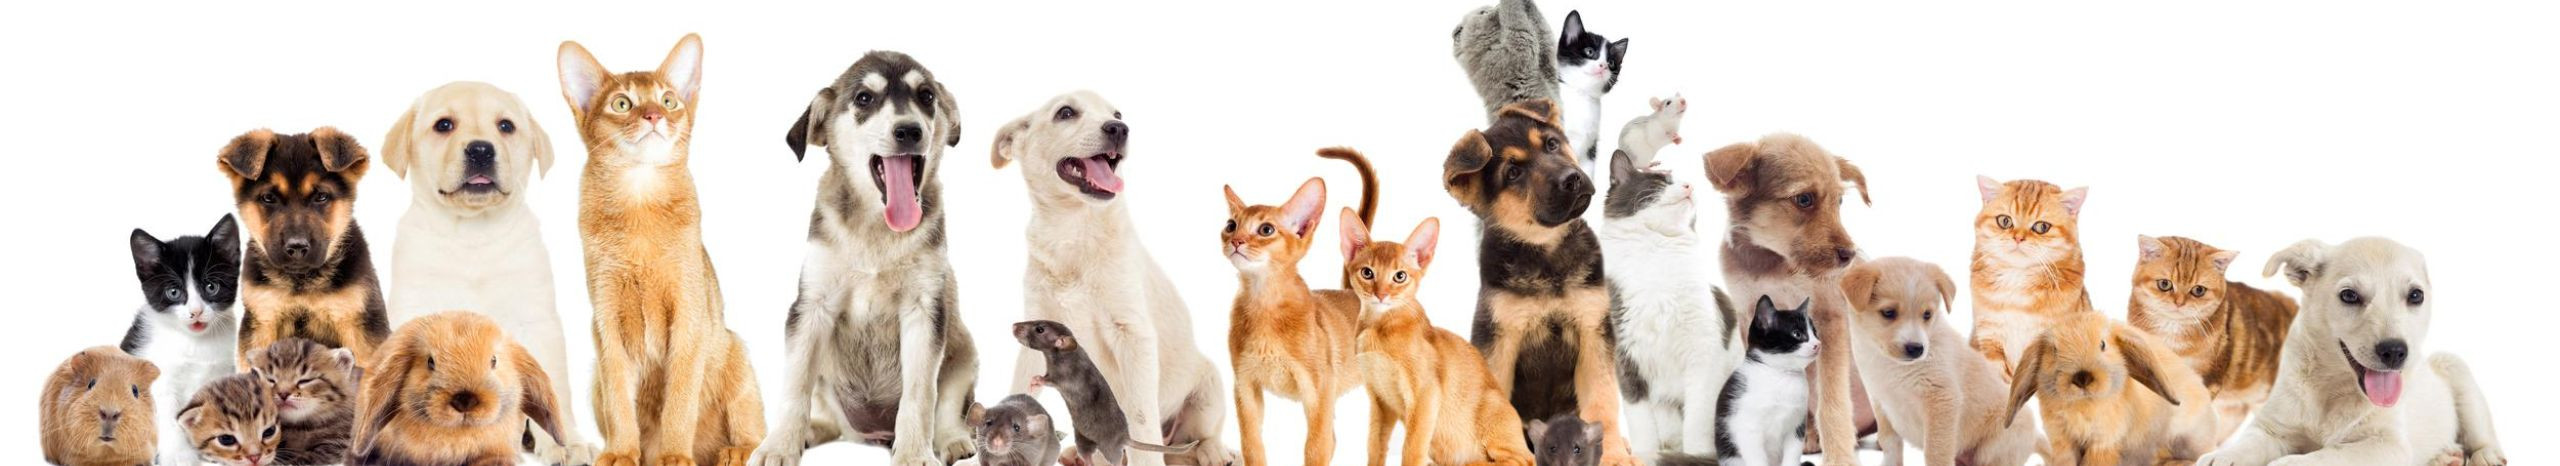 Oleme pühendunud lemmikloomade heaolule, pakkudes kvaliteetseid tooteid ja teenuseid, mis aitavad nende eest hoolitseda. Meie eesmärk on pakkuda parimat valikut ja tuge, et tagada teie lemmiku õnnelik ja tervislik elu